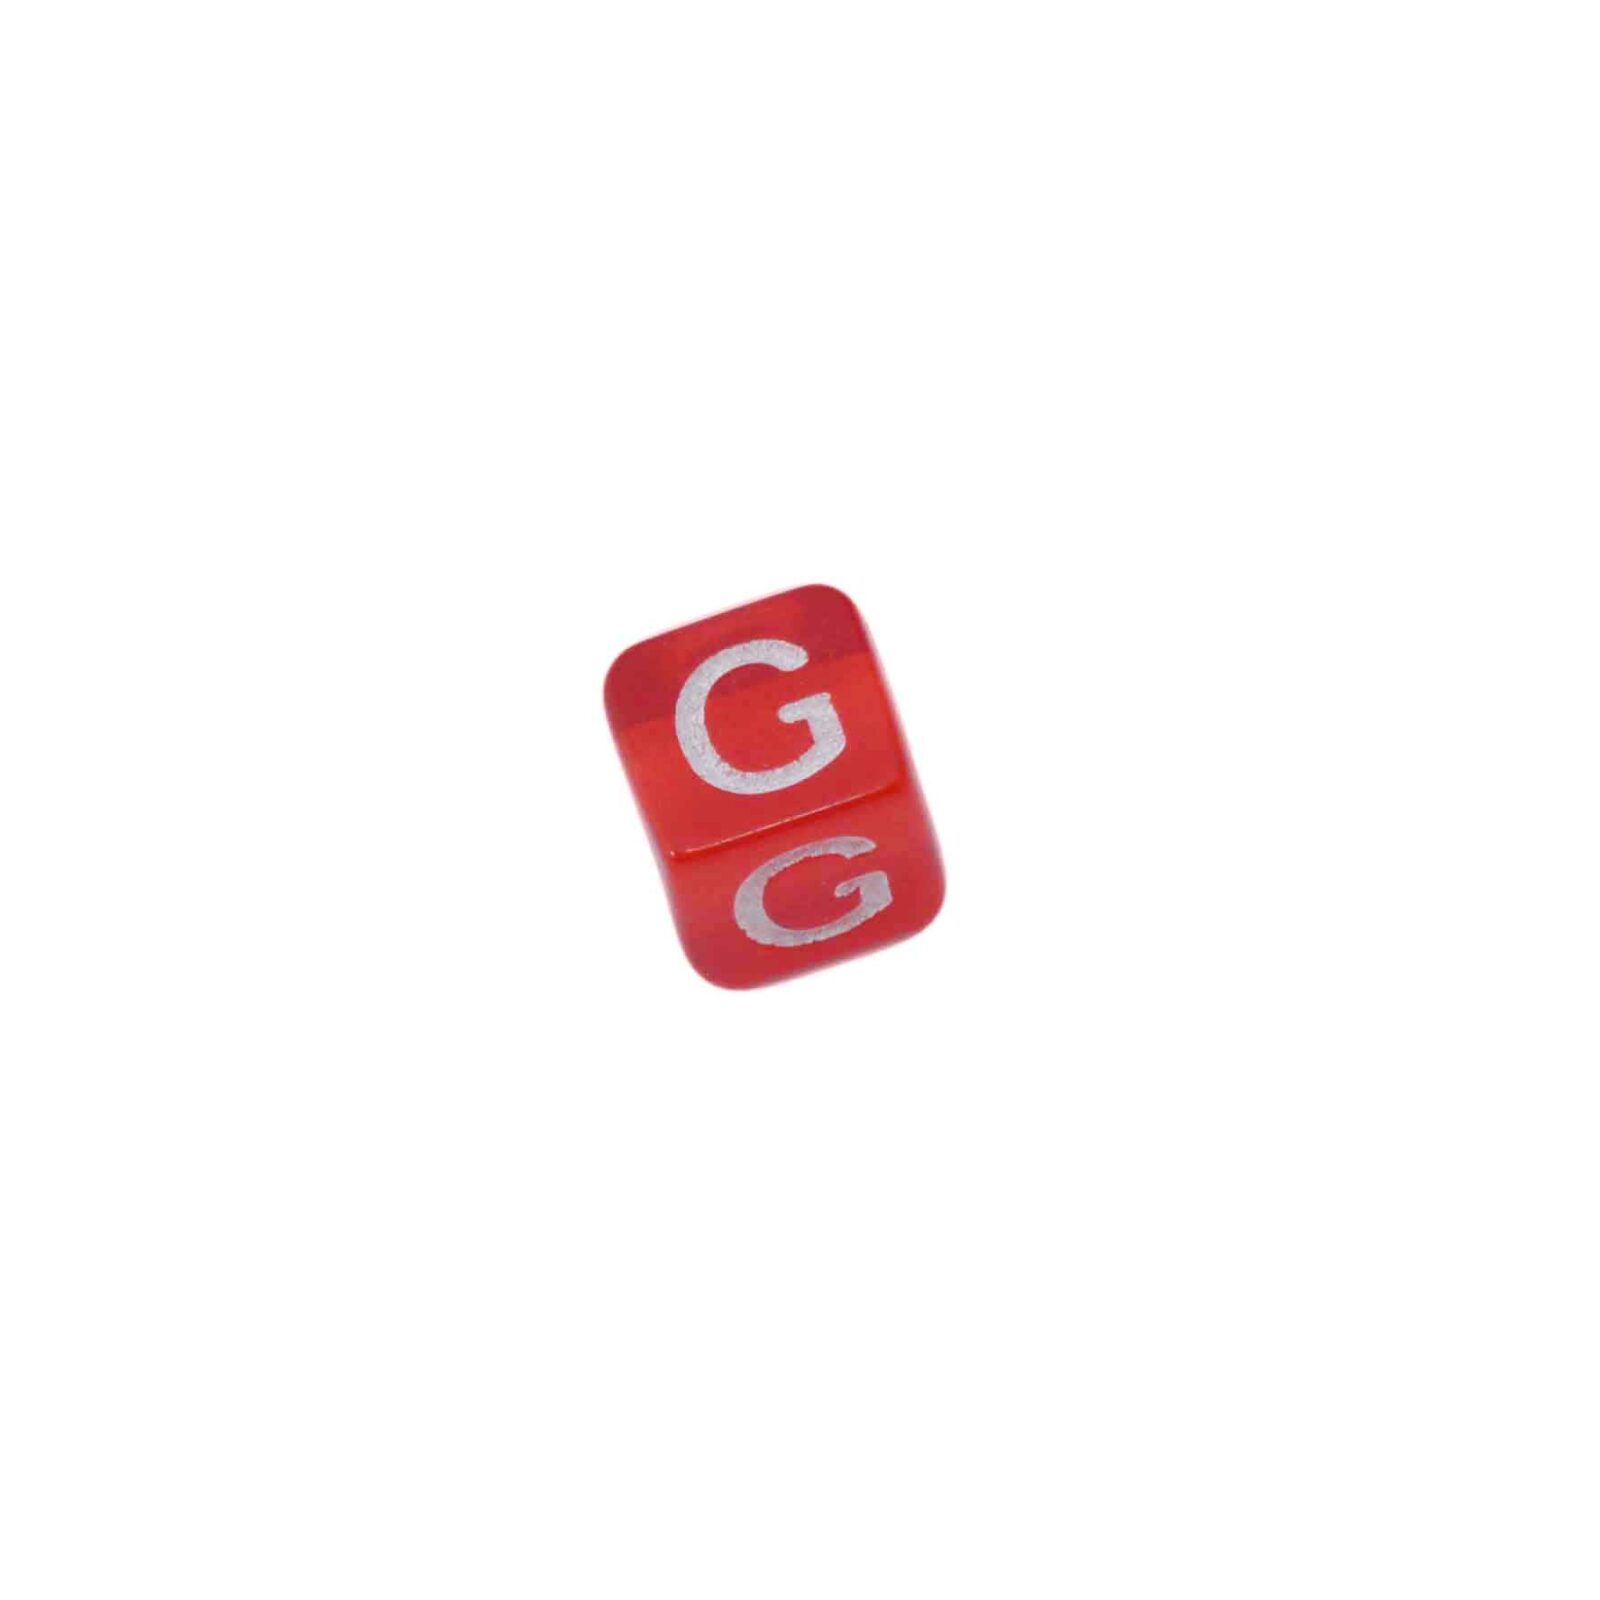 Rode letterkraal G